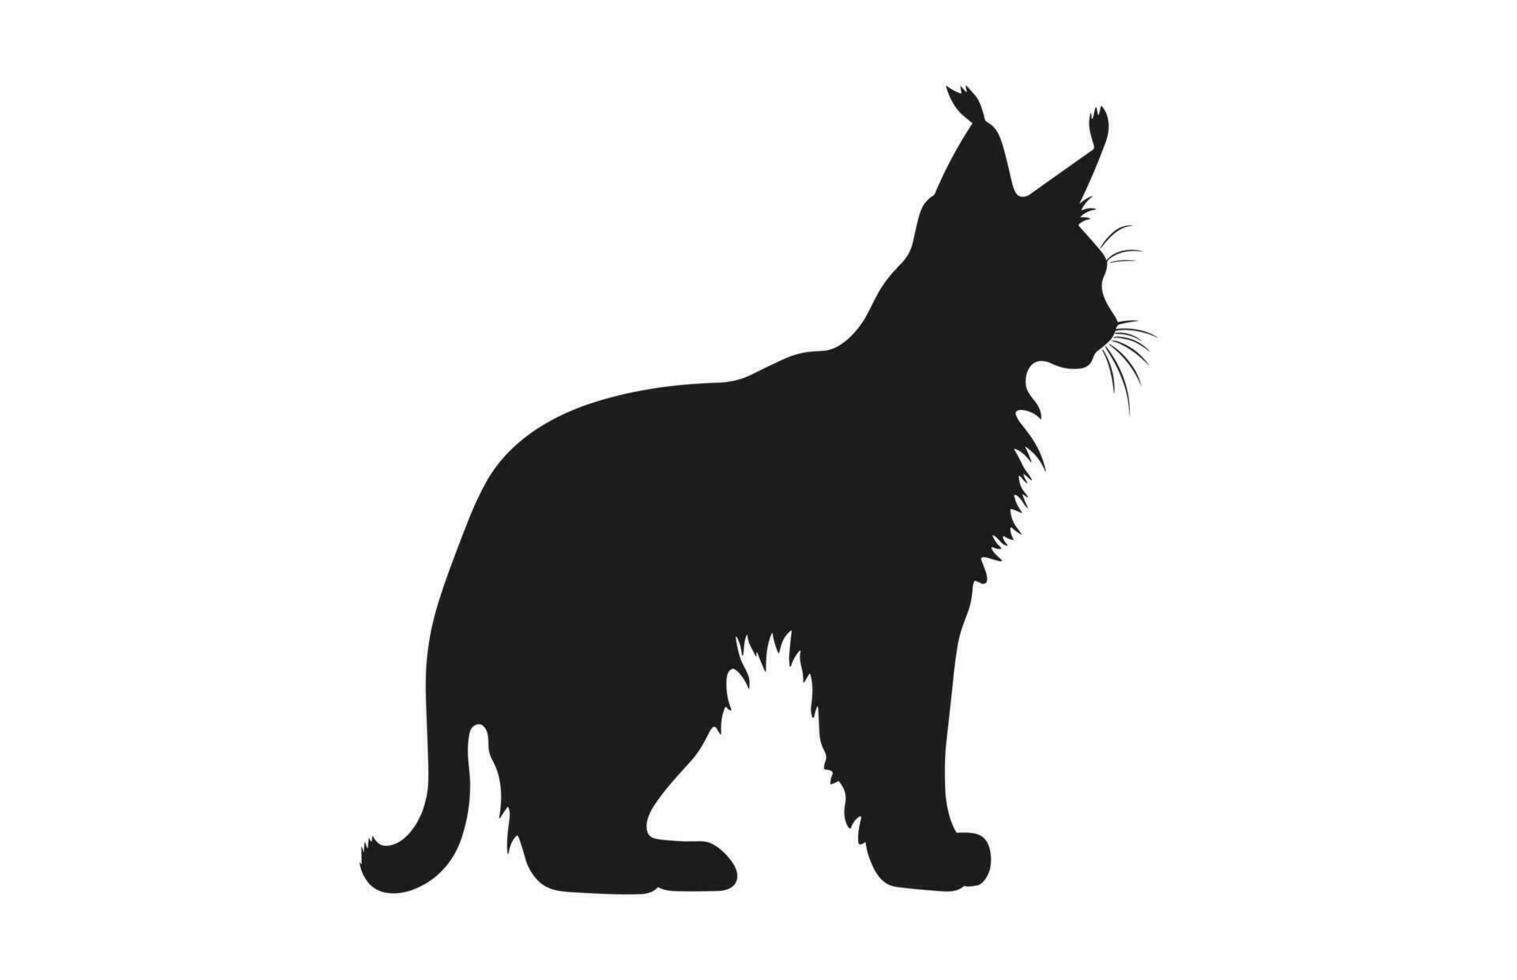 lince gato negro silueta vector gratis